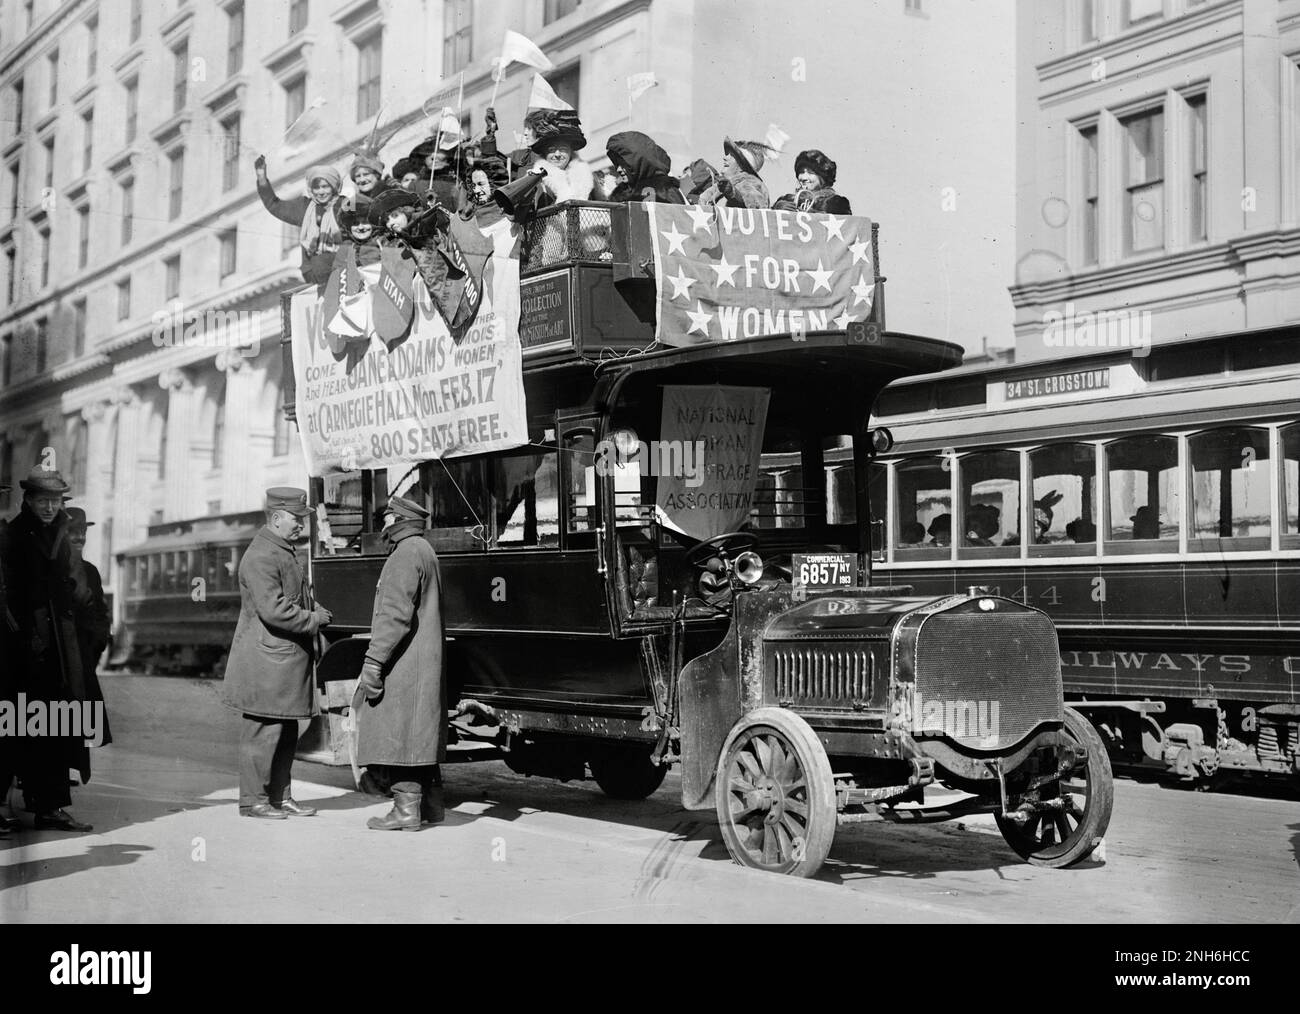 Wanderer in Washington - Suffragisten in einem Top-Bus in New York City auf dem Weg nach Washington - 1913 Stockfoto